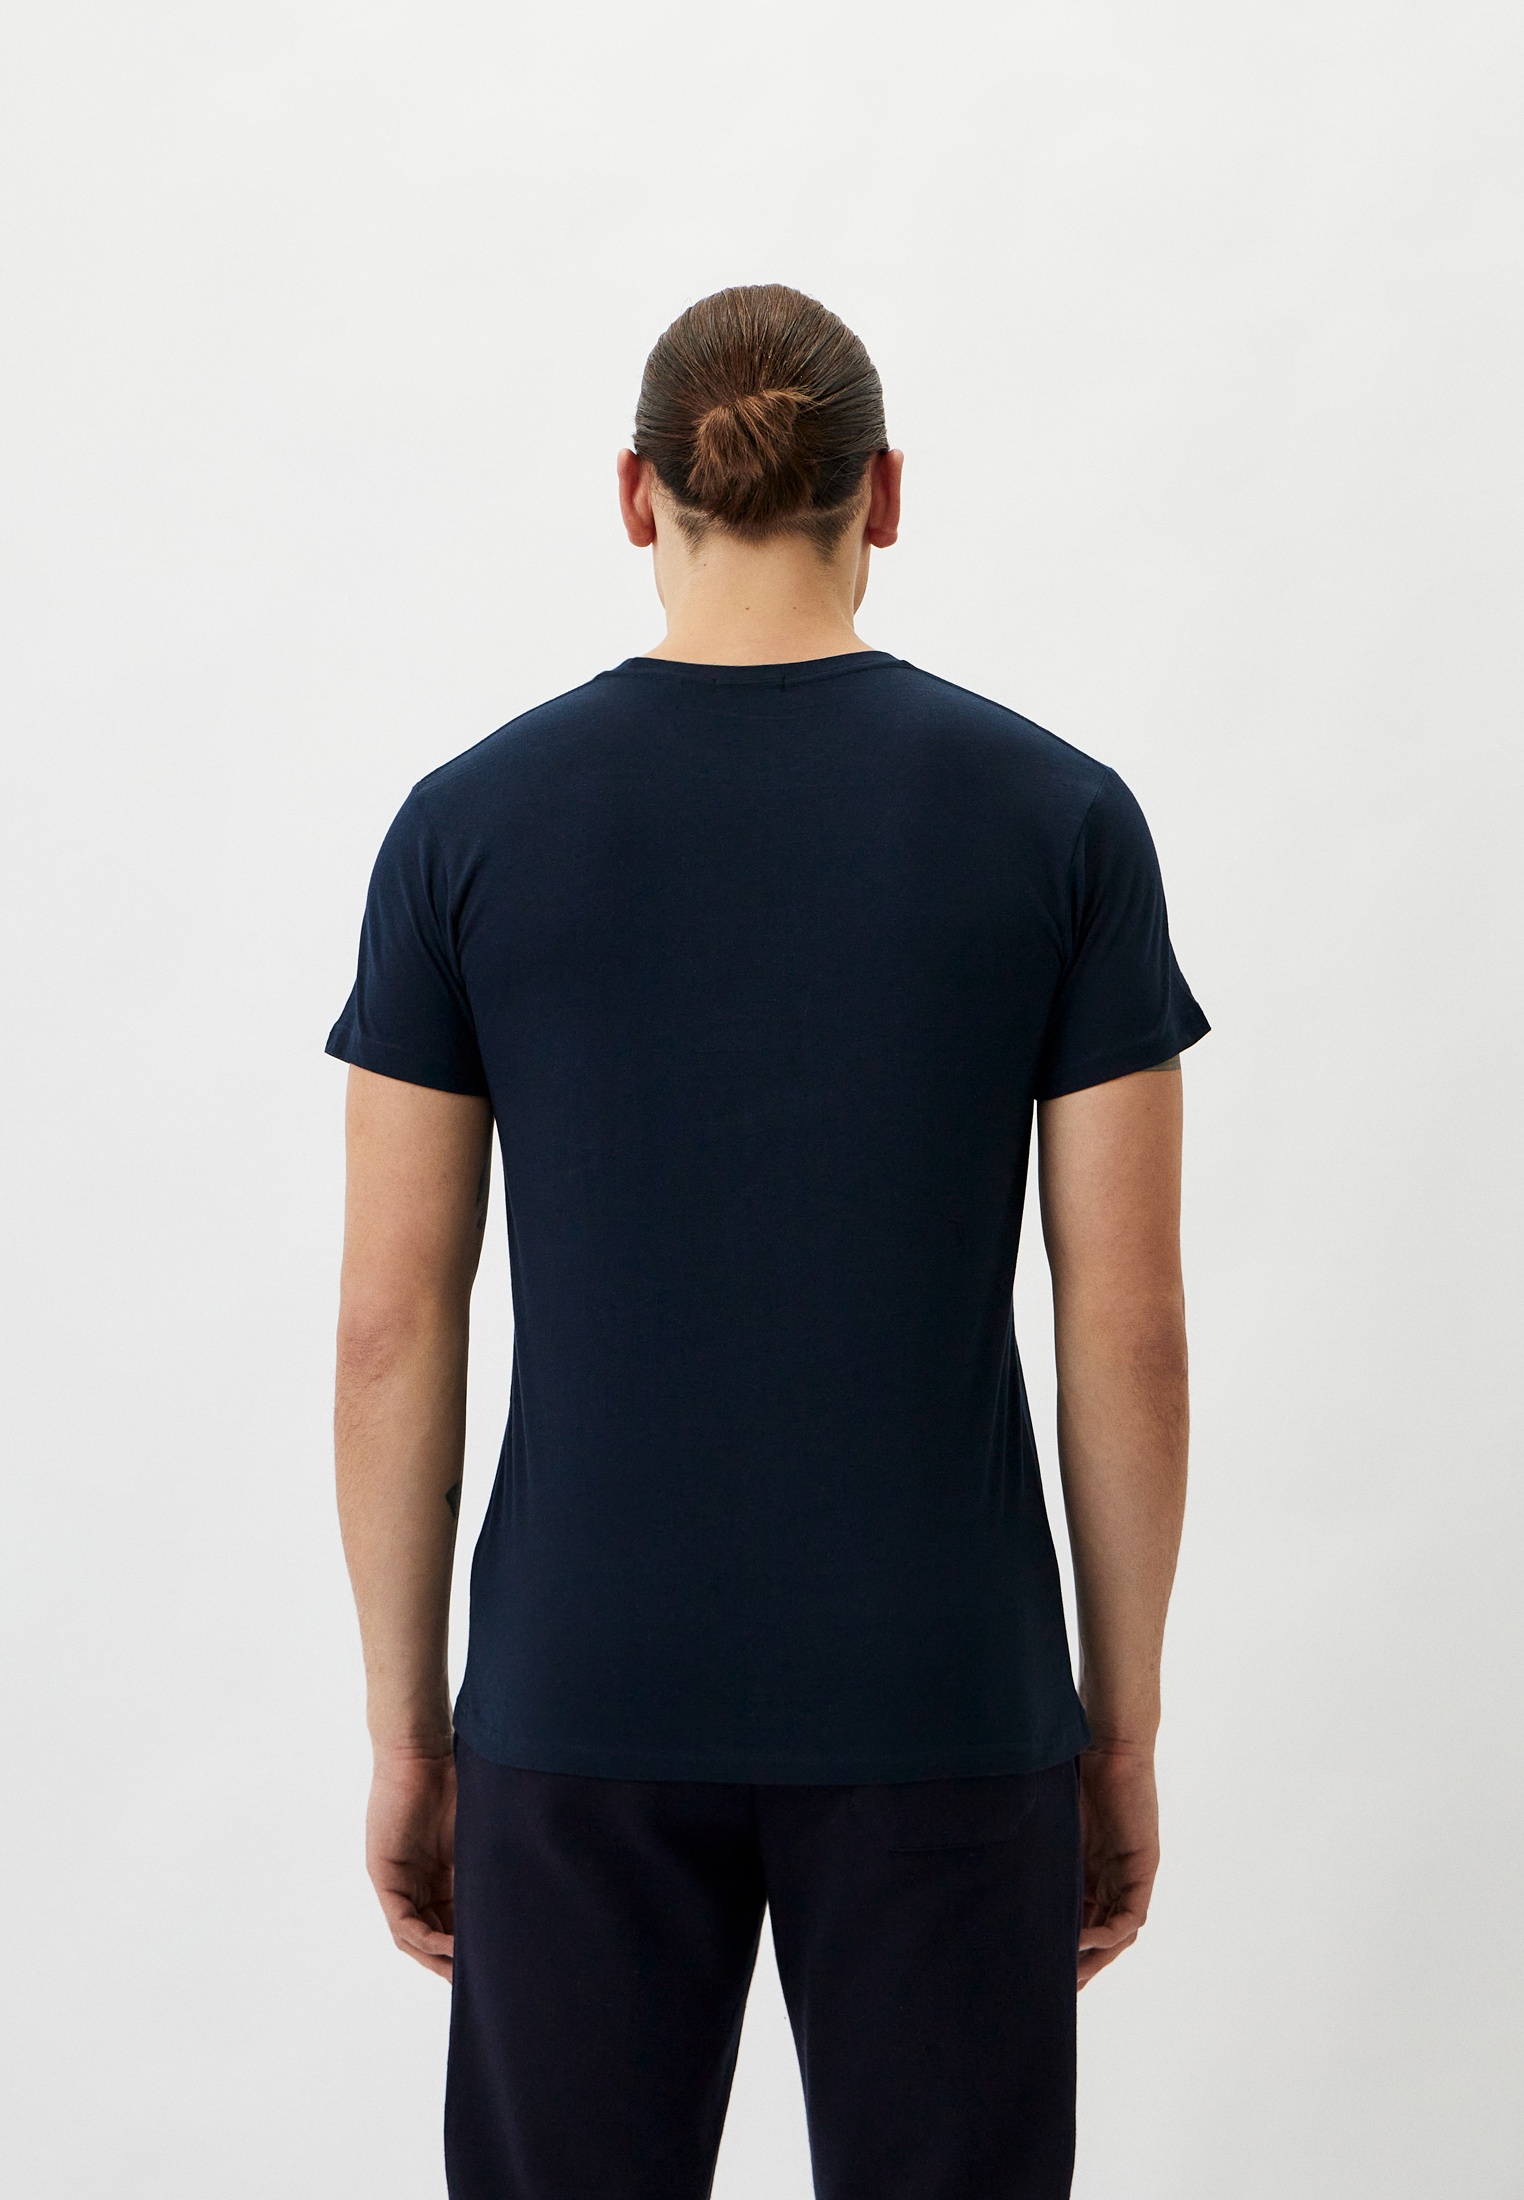 Мужская футболка Baldinini (Балдинини) B-OLM-M014: изображение 3